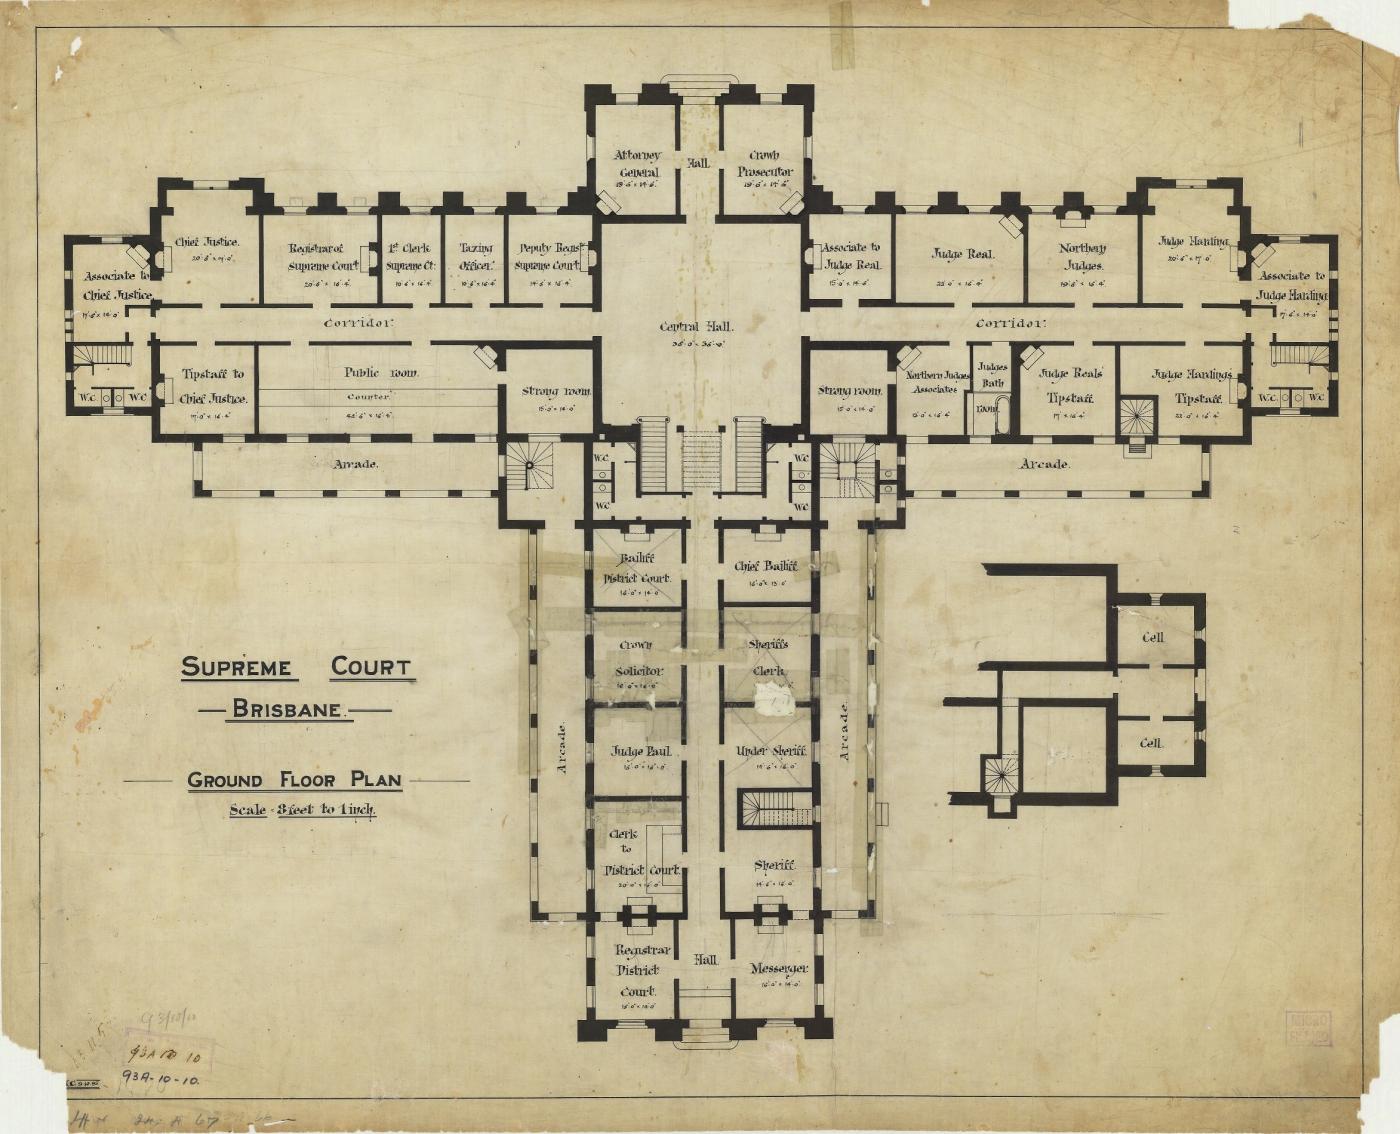 Supreme Court, Brisbane. Ground Floor Plan, 1895